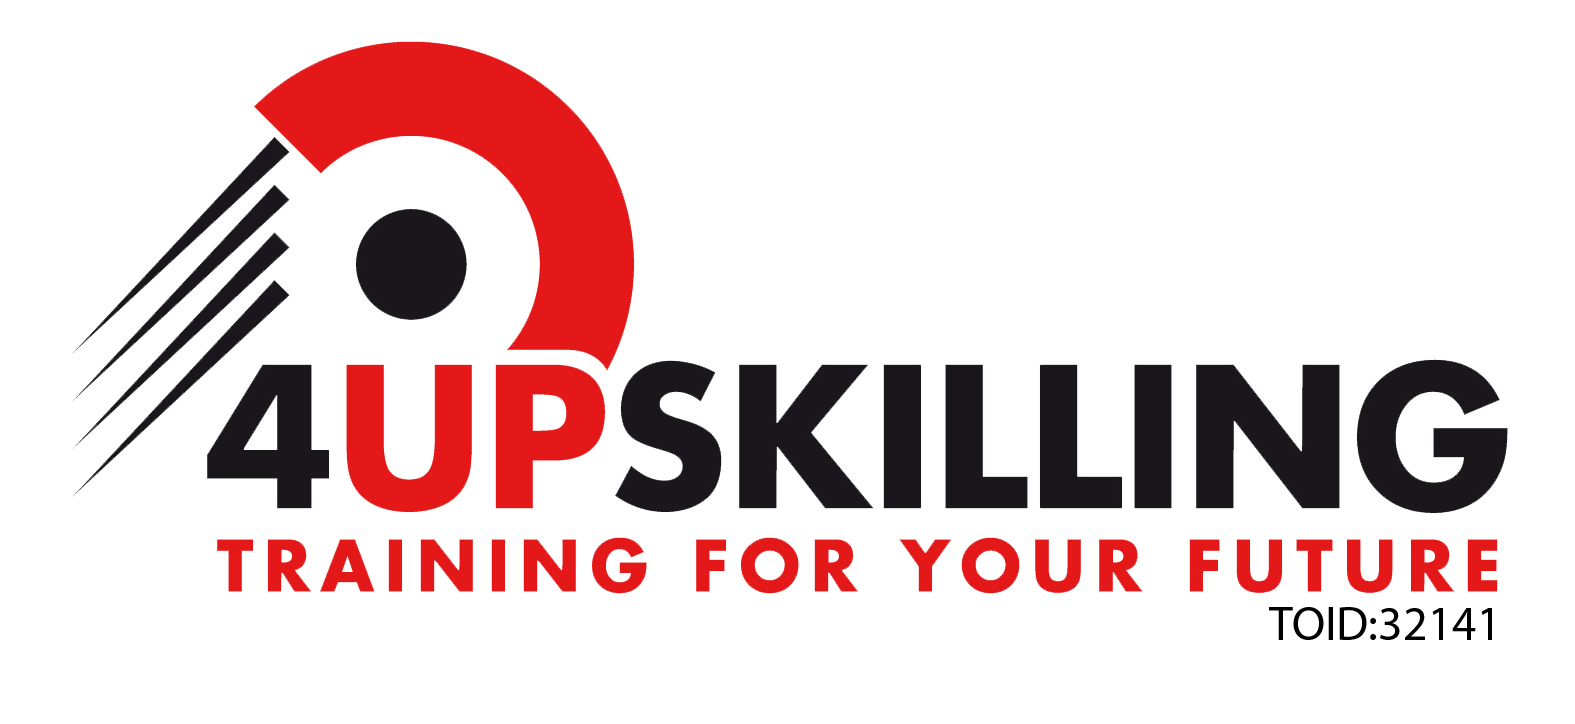 4upskilling logo LARGE With TOID